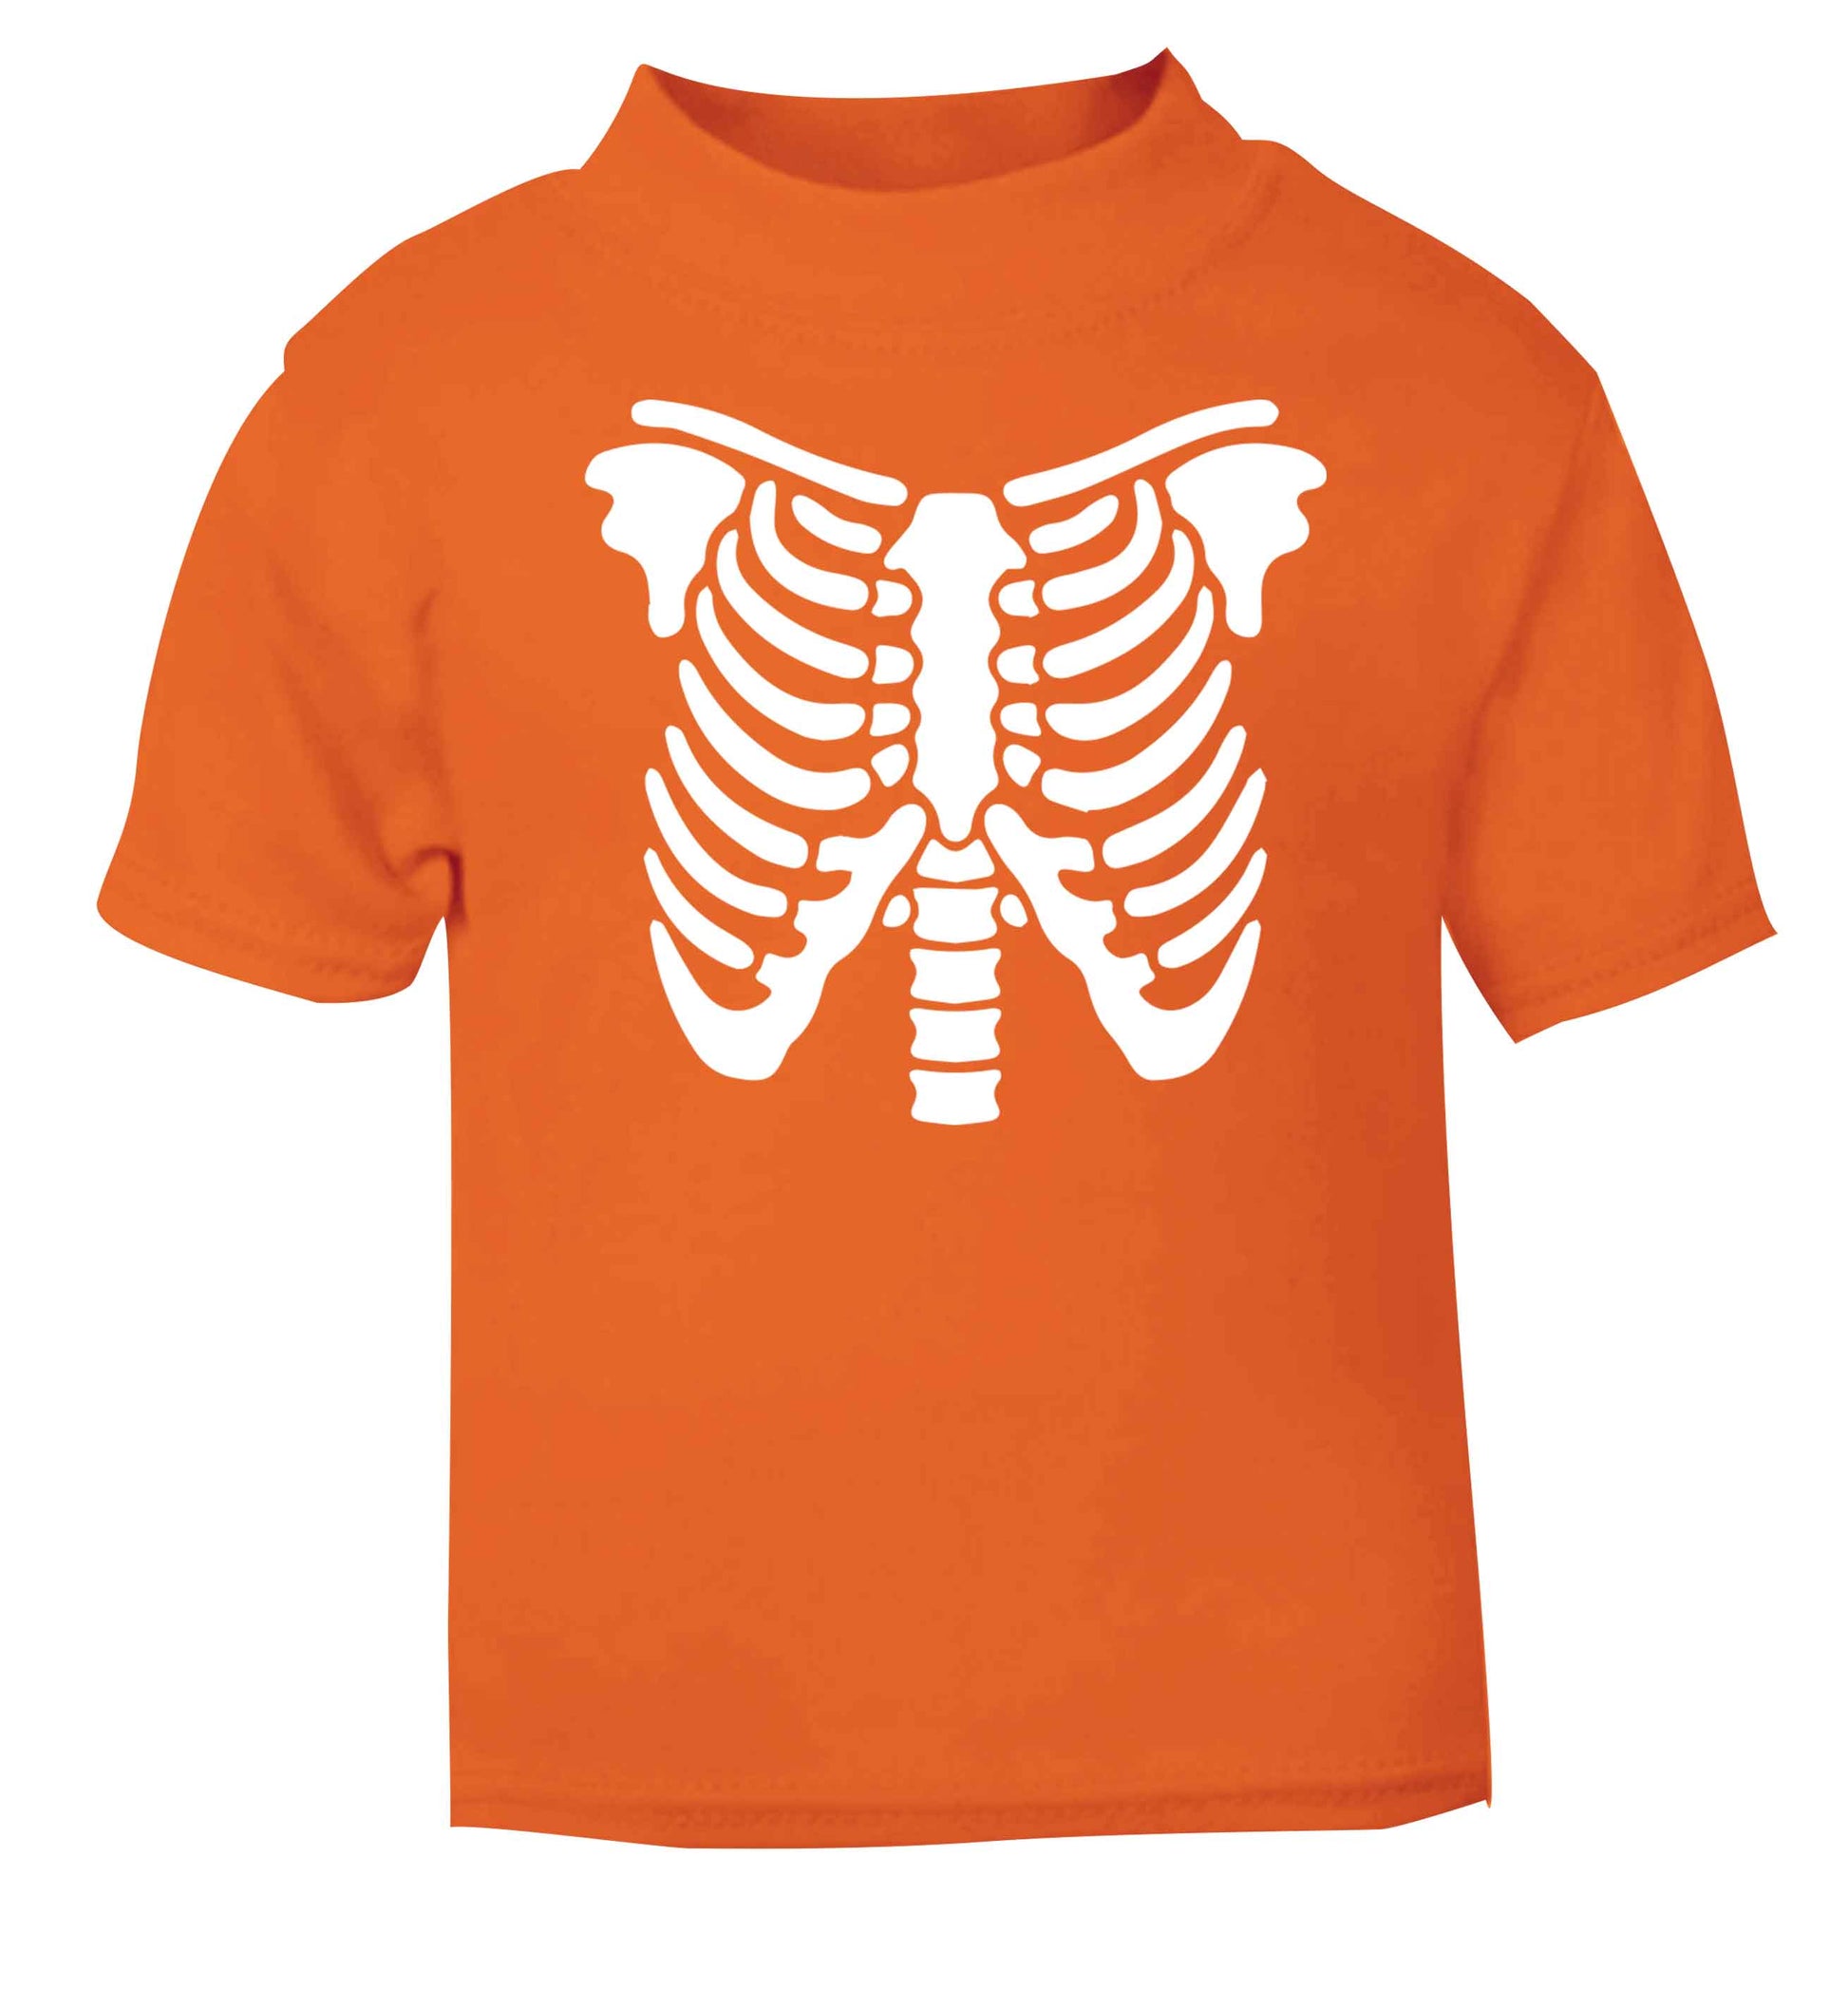 Skeleton ribcage orange baby toddler Tshirt 2 Years